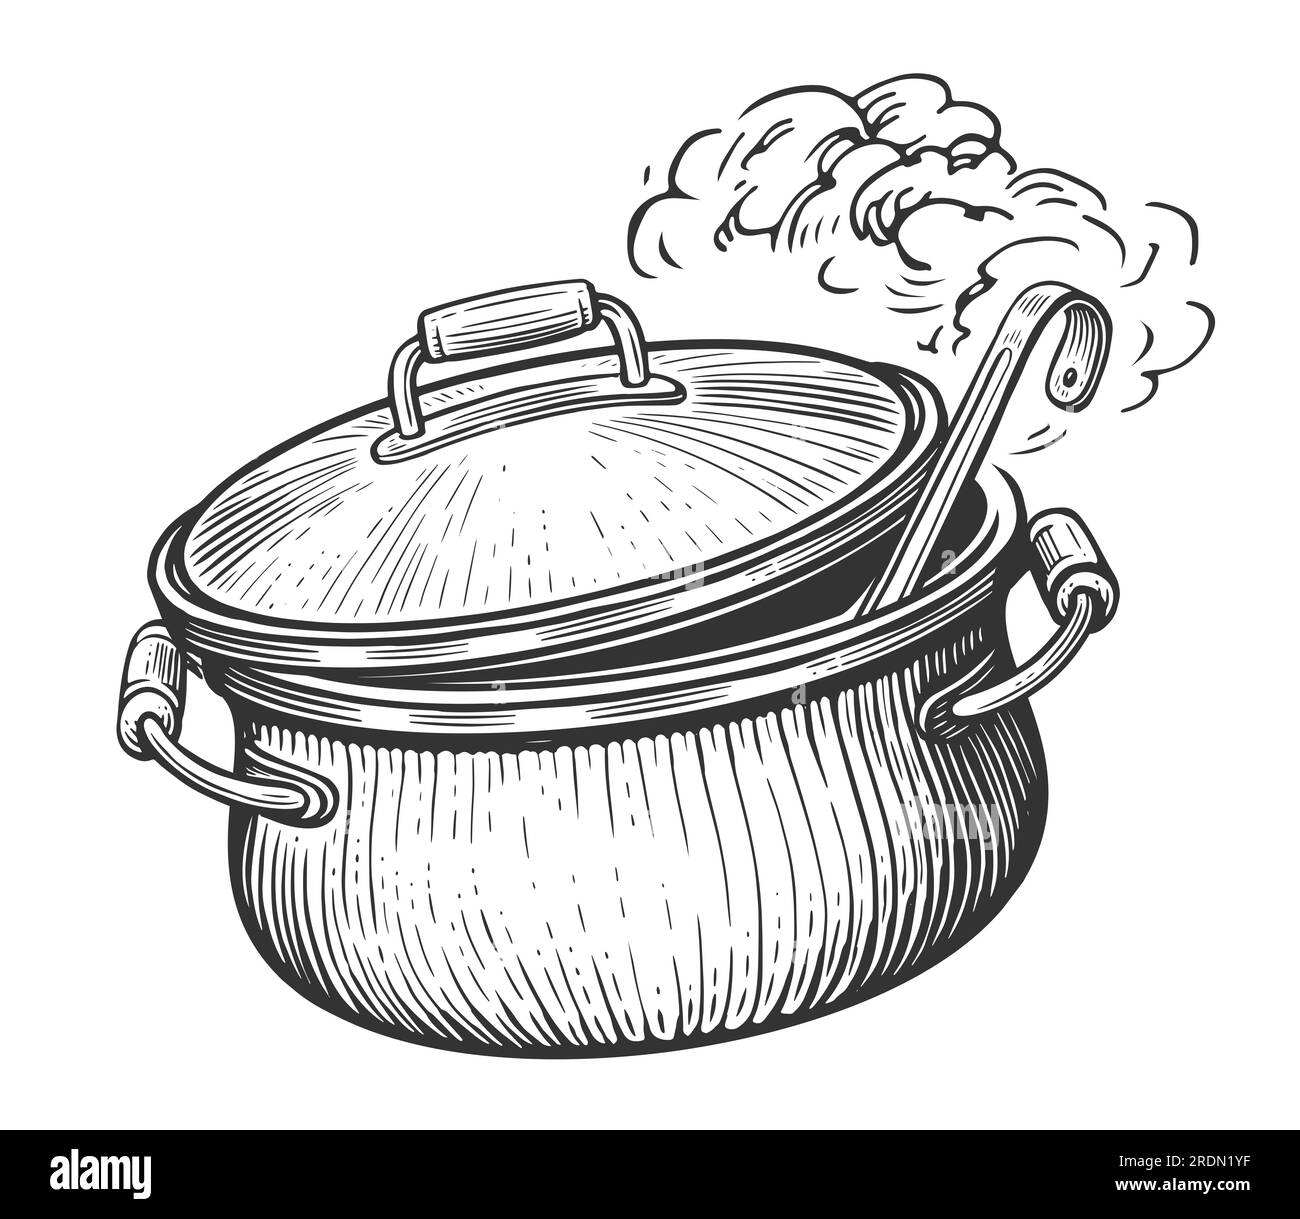 Küchentopf mit Deckel und Kelle. Essen kochen. Skizzenzeichnung im klassischen Gravurstil Stockfoto